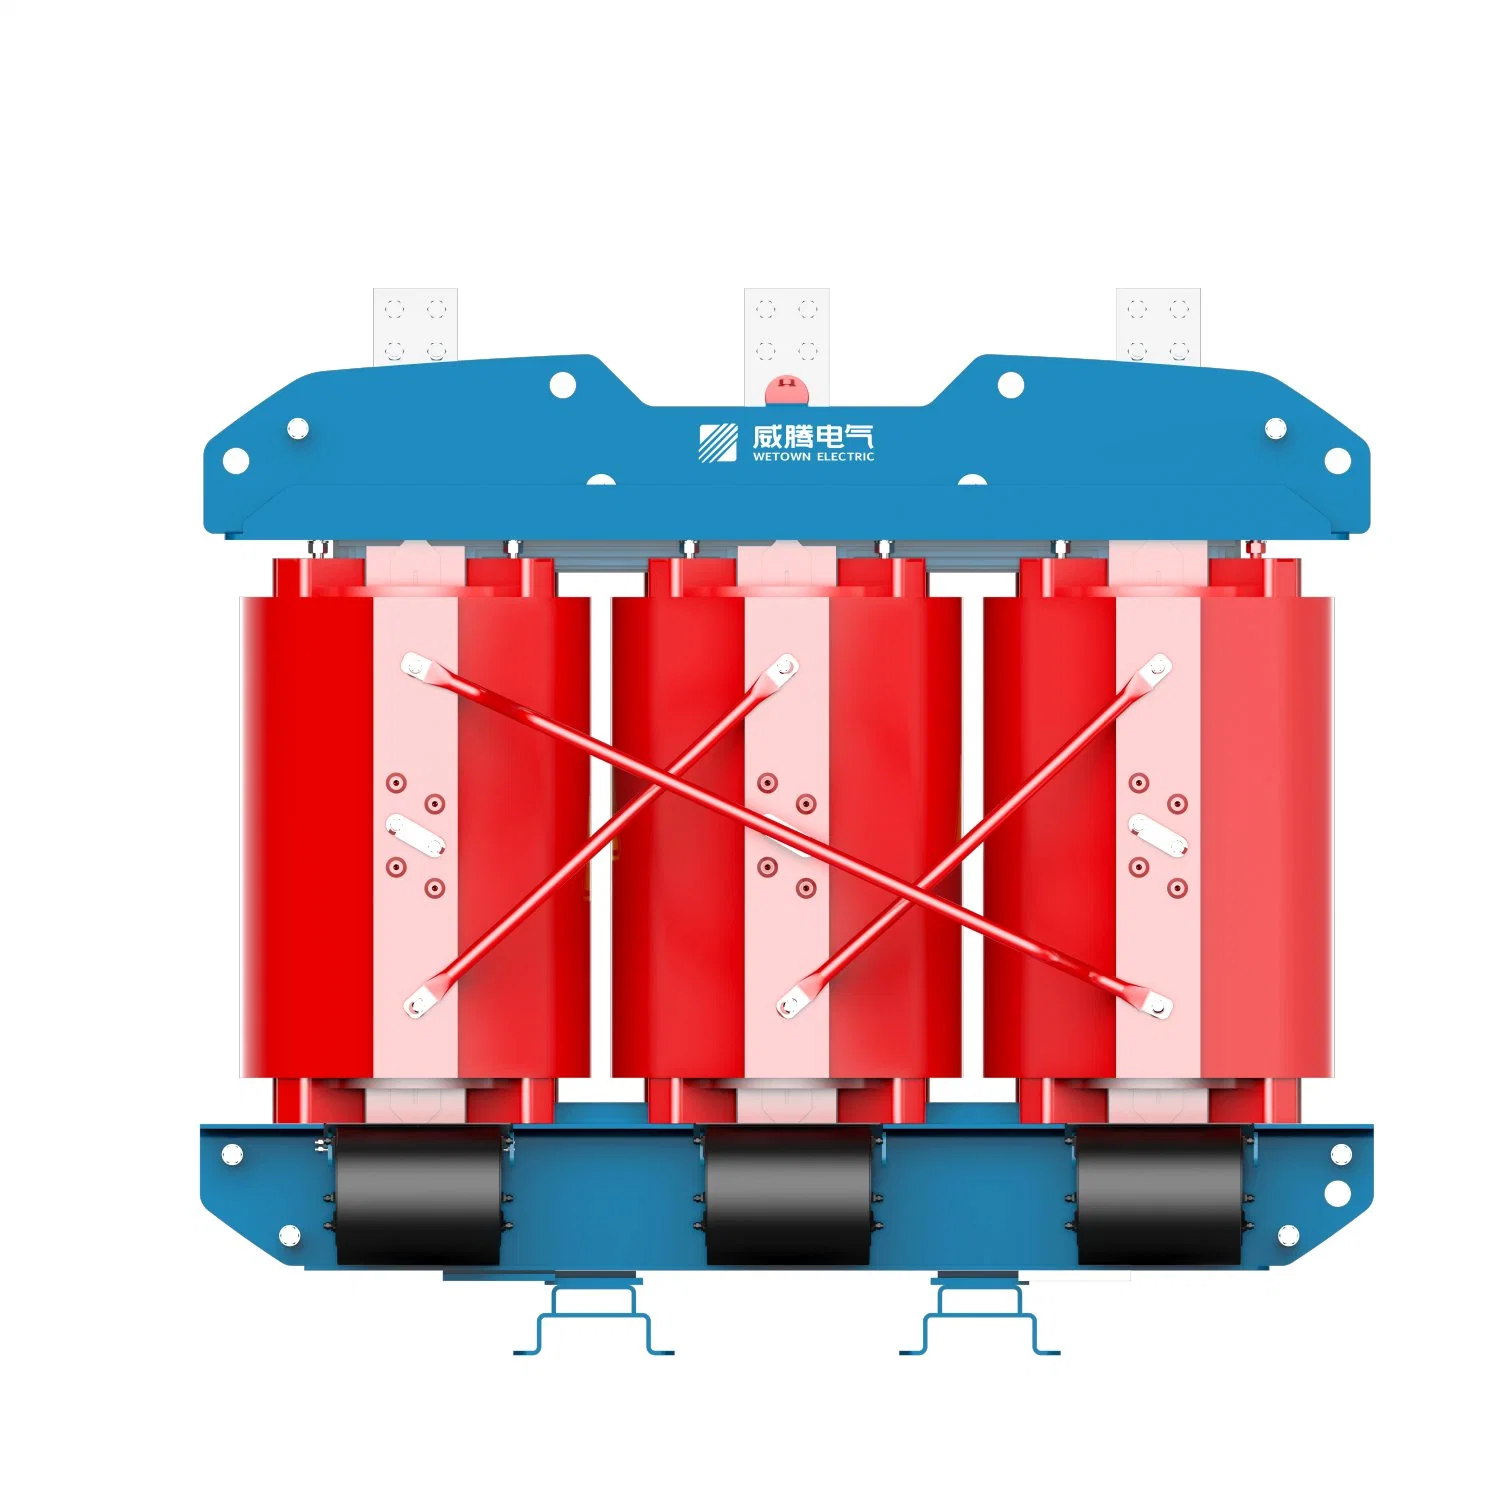 Wetrans Série SCB transformador do tipo seco epóxi fundido Wetown lata elétrica Forneça Serviços personalizados para o seu cenário especial